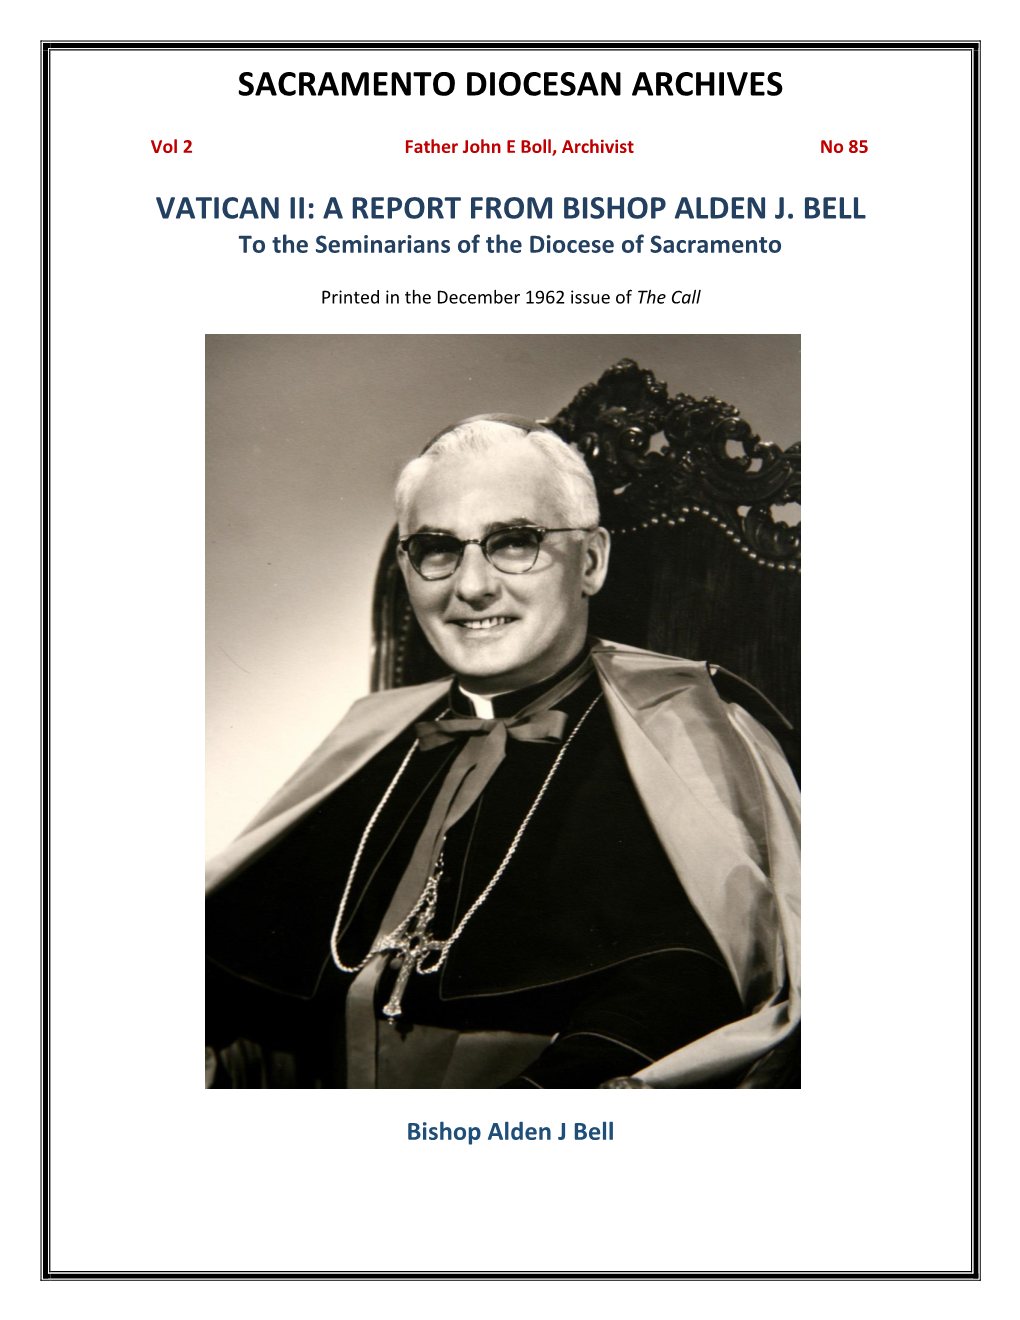 Vol 2, No 85 Vatican II Bishop Alden Bell Writes